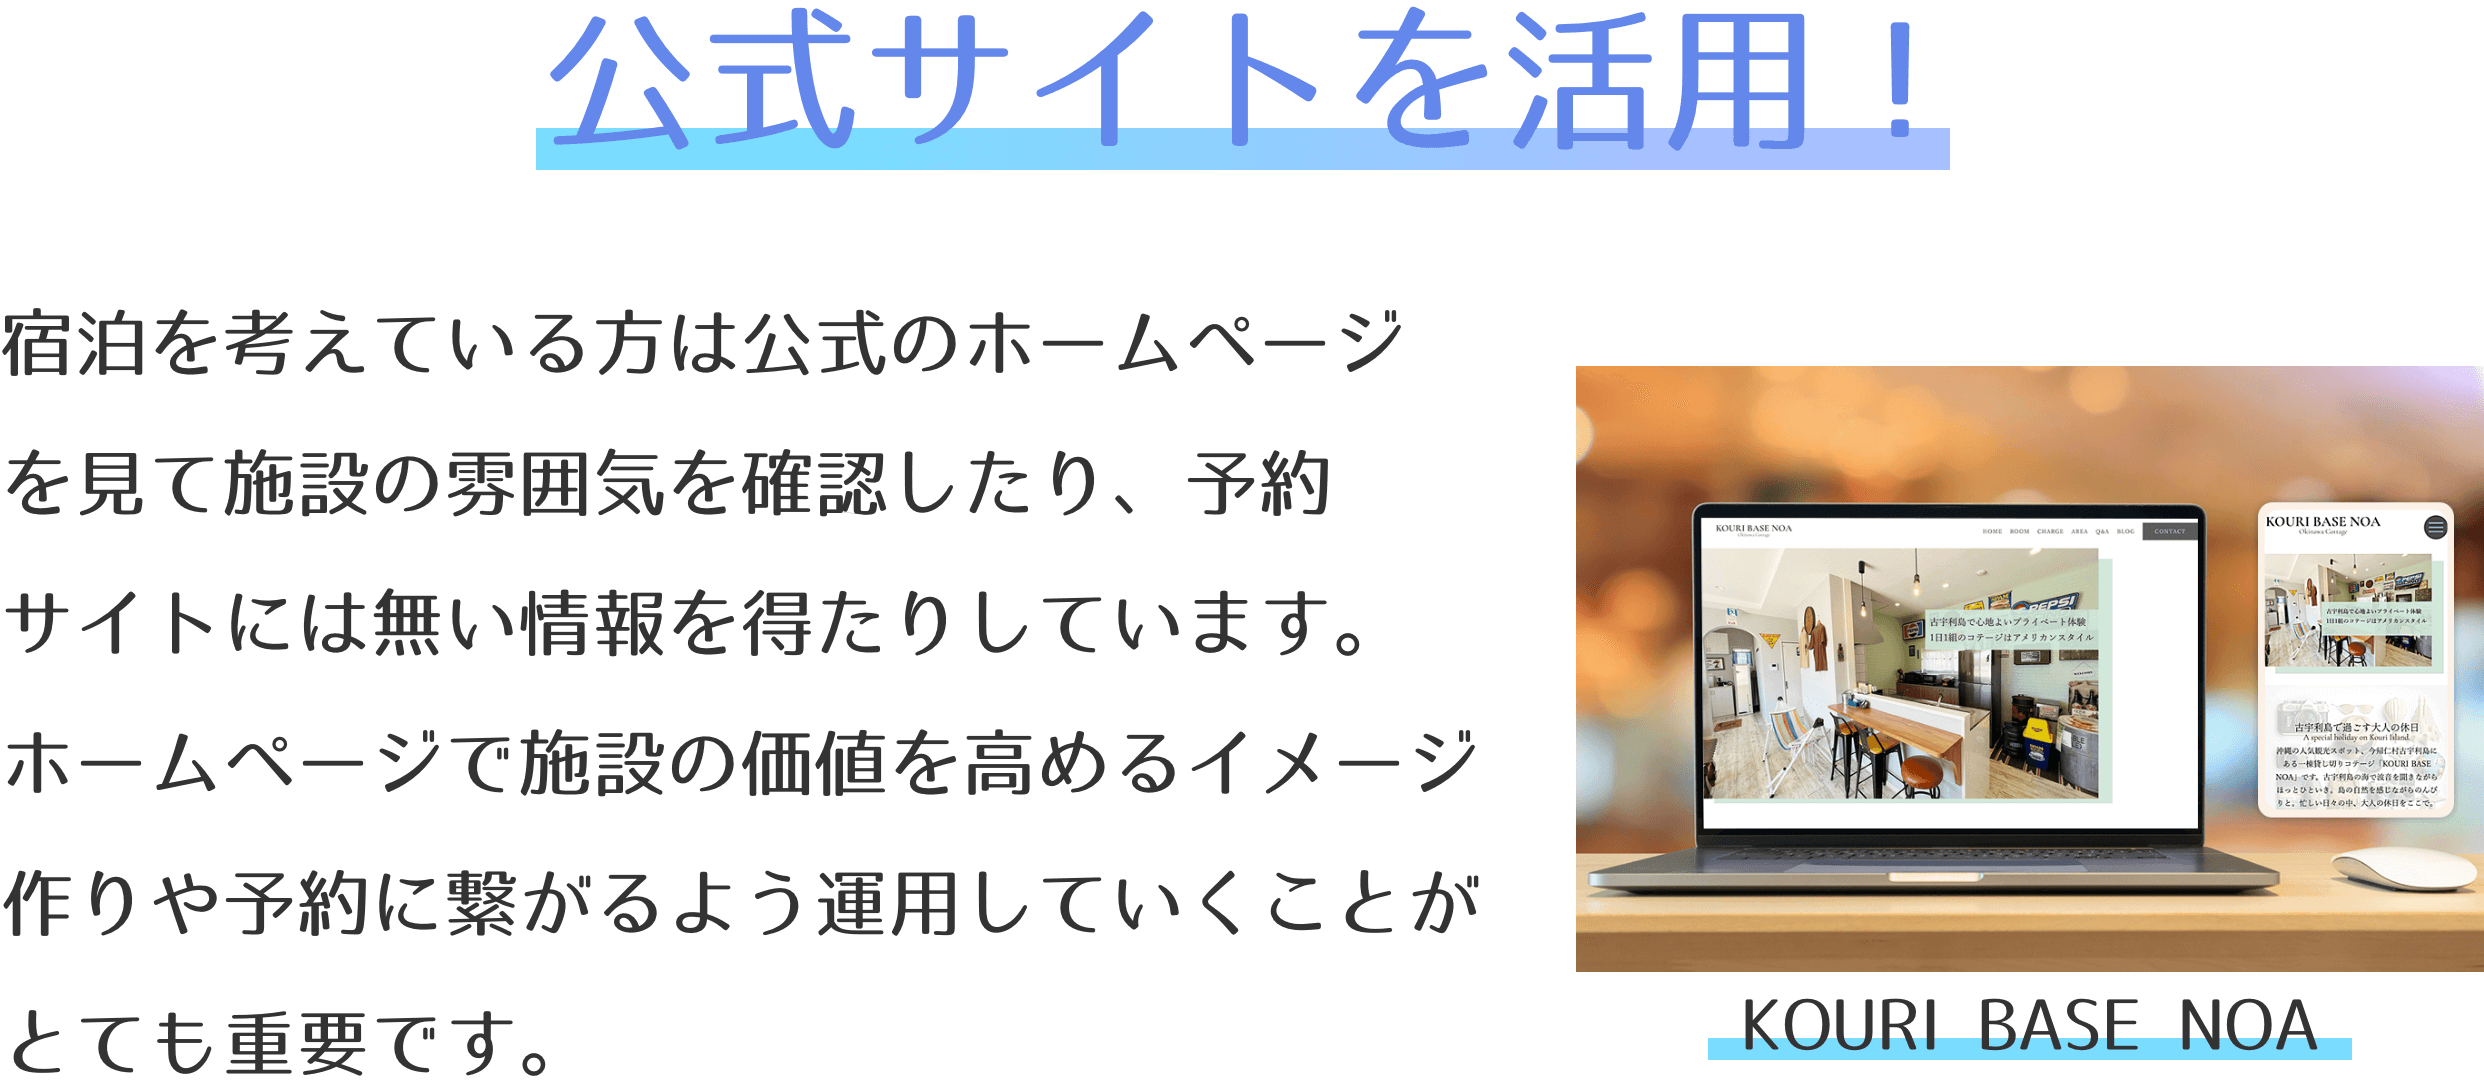 沖縄 宿泊代行サービス 公式ホームページを制作